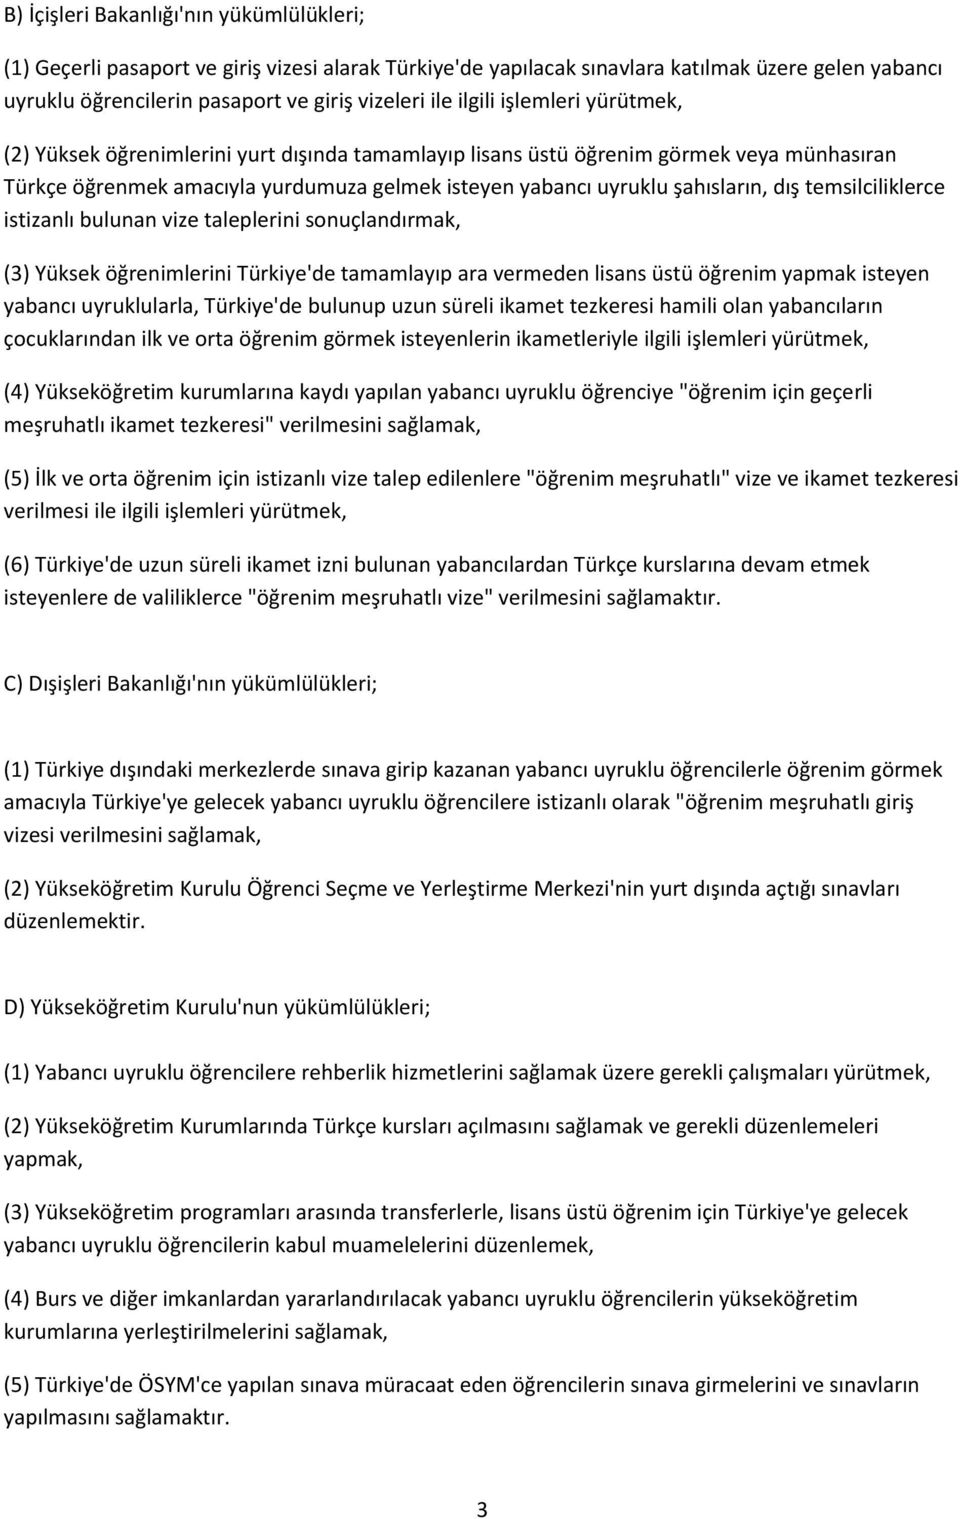 dış temsilciliklerce istizanlı bulunan vize taleplerini sonuçlandırmak, (3) Yüksek öğrenimlerini Türkiye'de tamamlayıp ara vermeden lisans üstü öğrenim yapmak isteyen yabancı uyruklularla, Türkiye'de